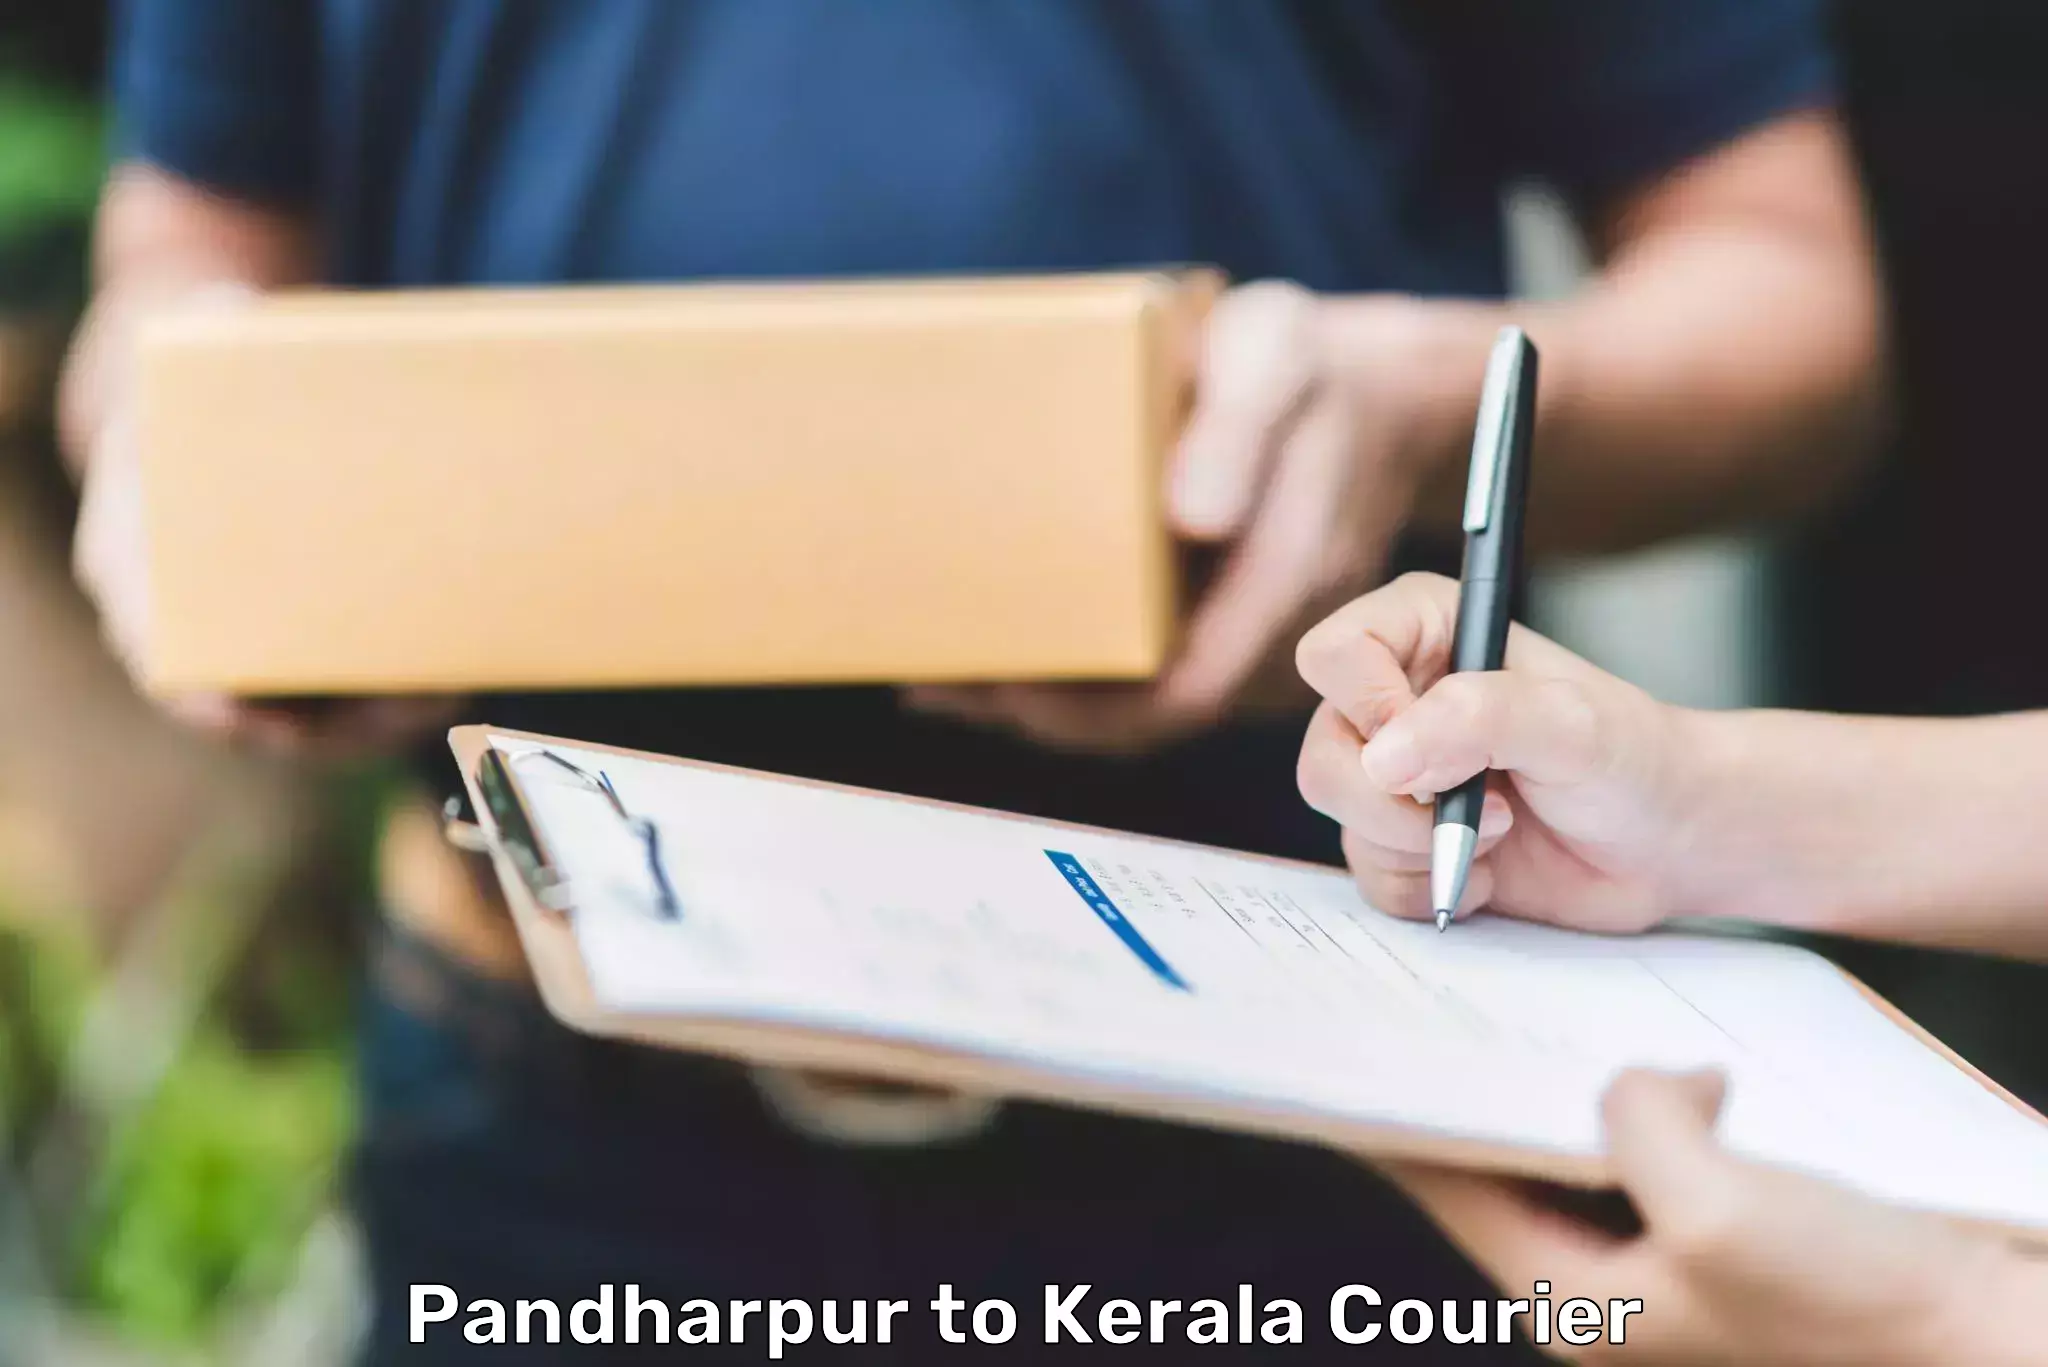 Quick booking process Pandharpur to Kakkur